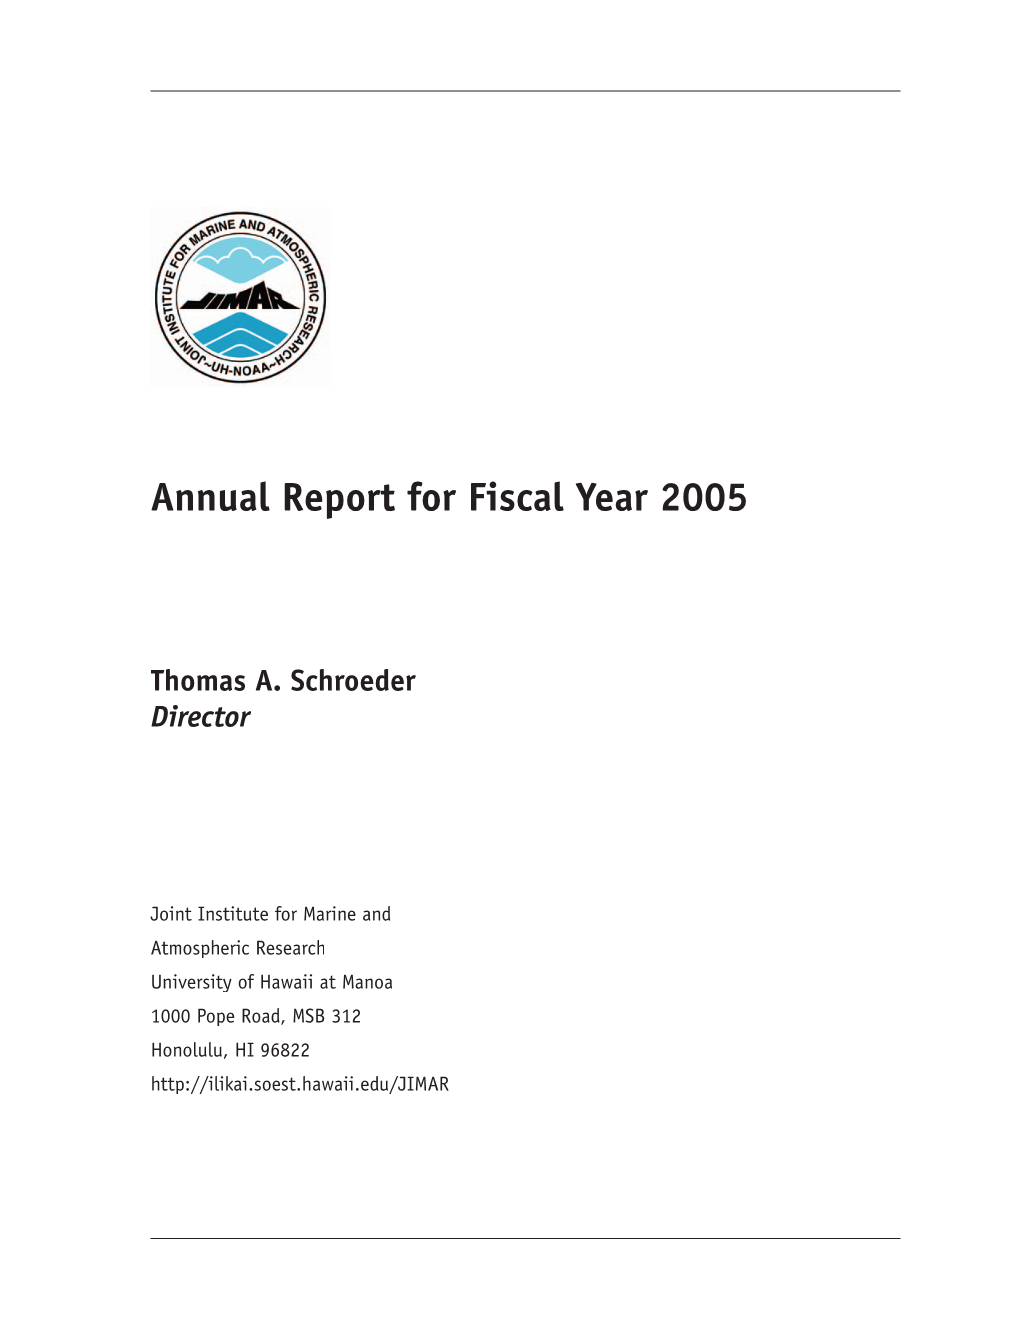 2005 JIMAR Annual Report